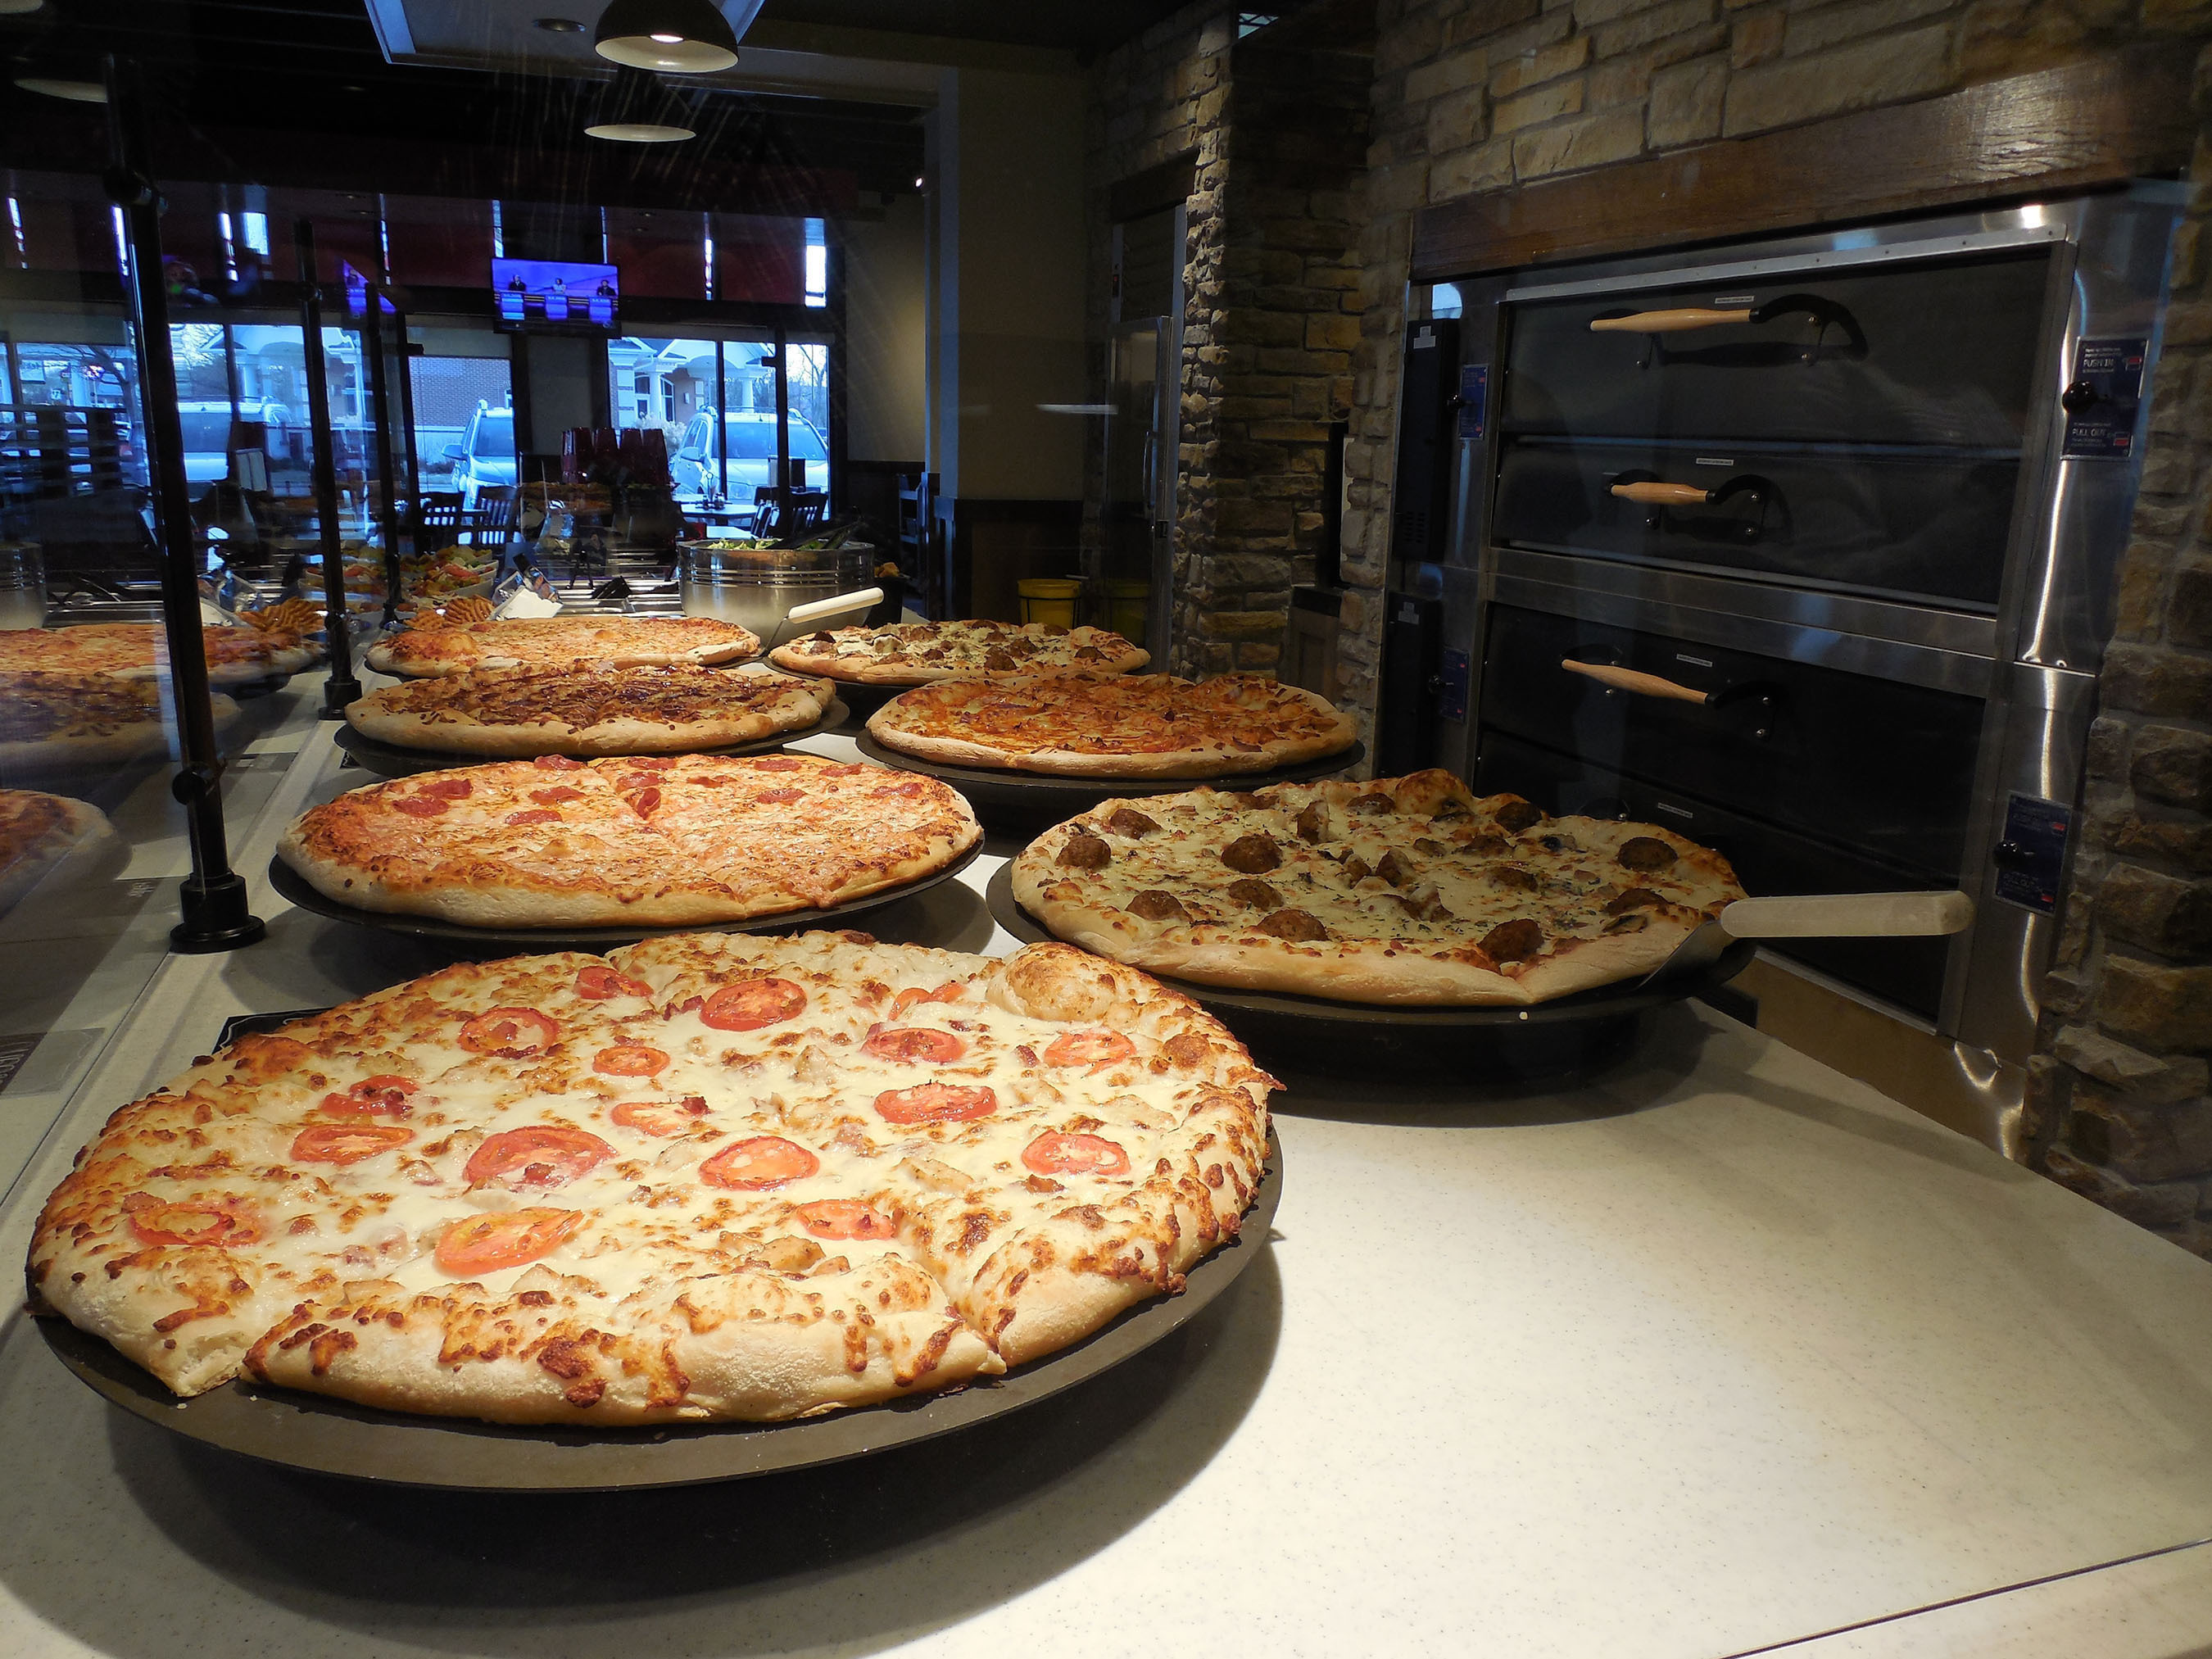 PIZZA HUT UNVEILS NEXT GENERATION RESTAURANT FORMATS. (PRNewsFoto/Pizza Hut) (PRNewsFoto/PIZZA HUT)